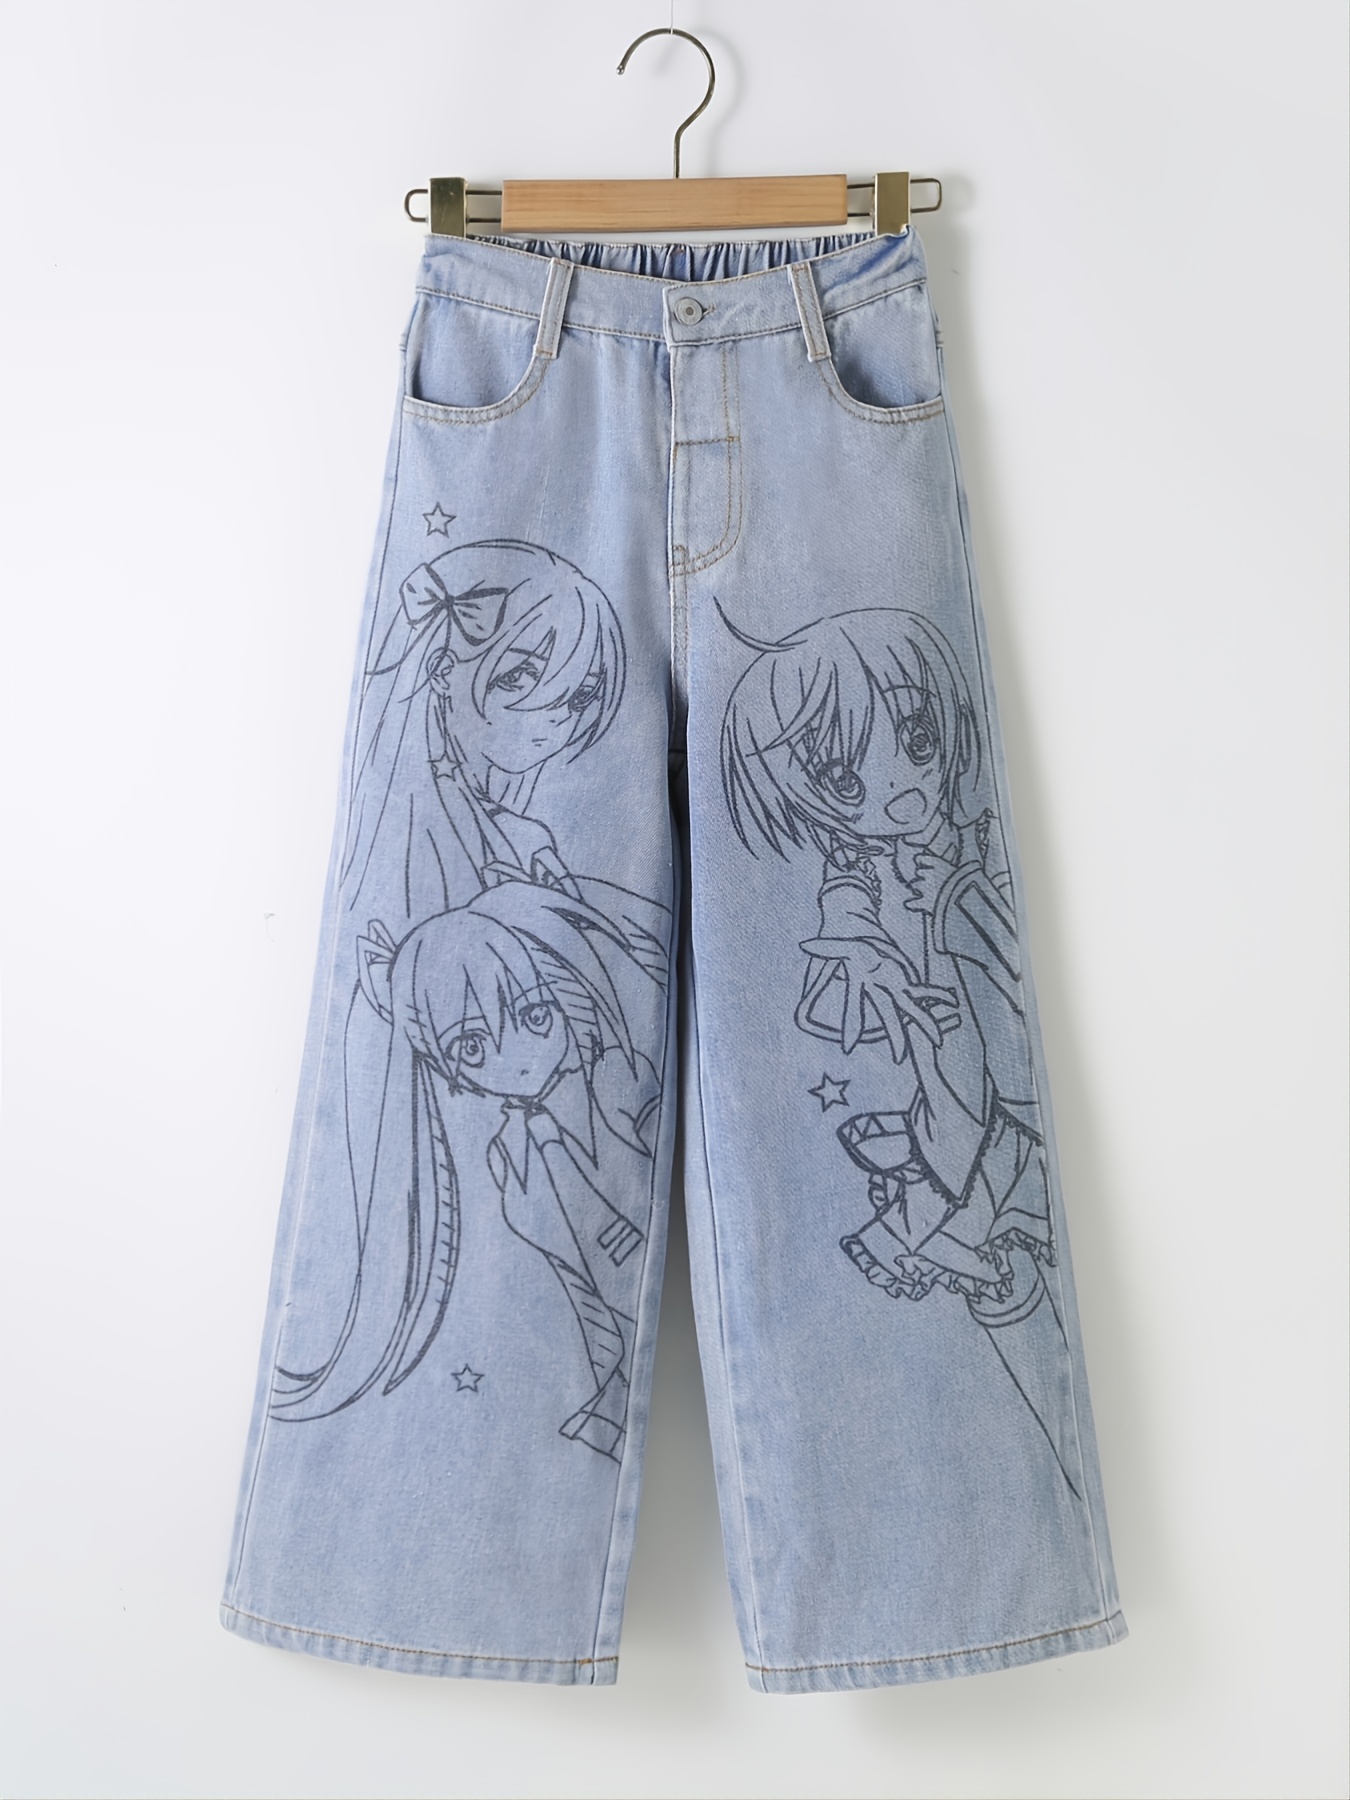 Tawop Women Fashion Casual Solid Color Jeans Pocket Pants Women'S Jeans  Anime Pants New Arrivals - Walmart.com